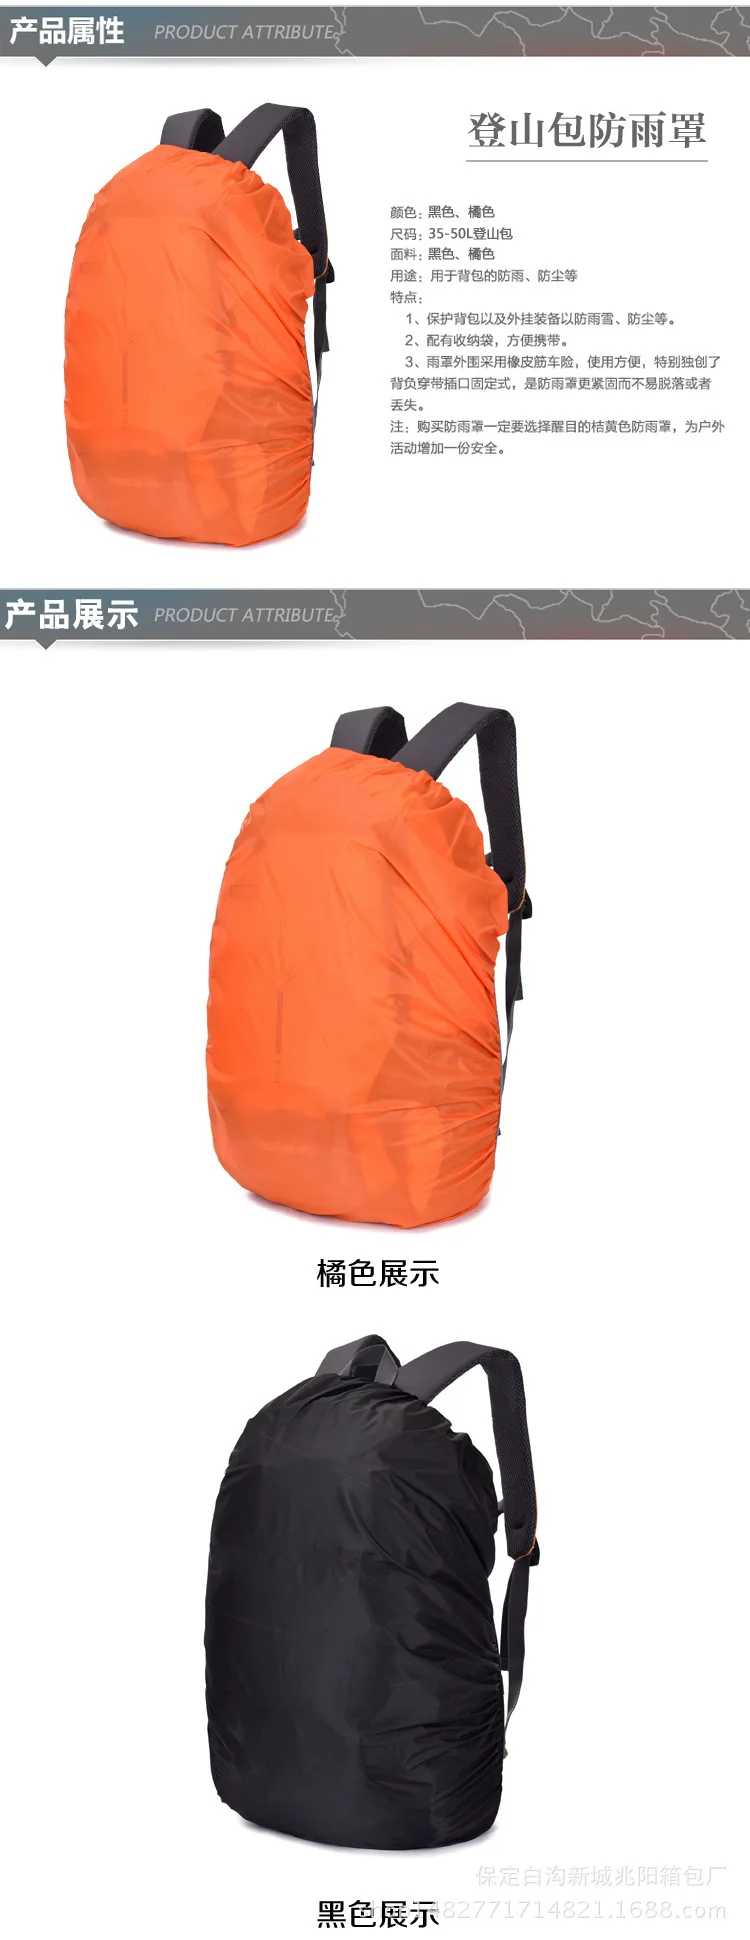 Стиль открытый непромокаемый рюкзак Обложка аттракционы багаж альпинистская сумка водонепроницаемый ранец Пылезащитный колпак водо